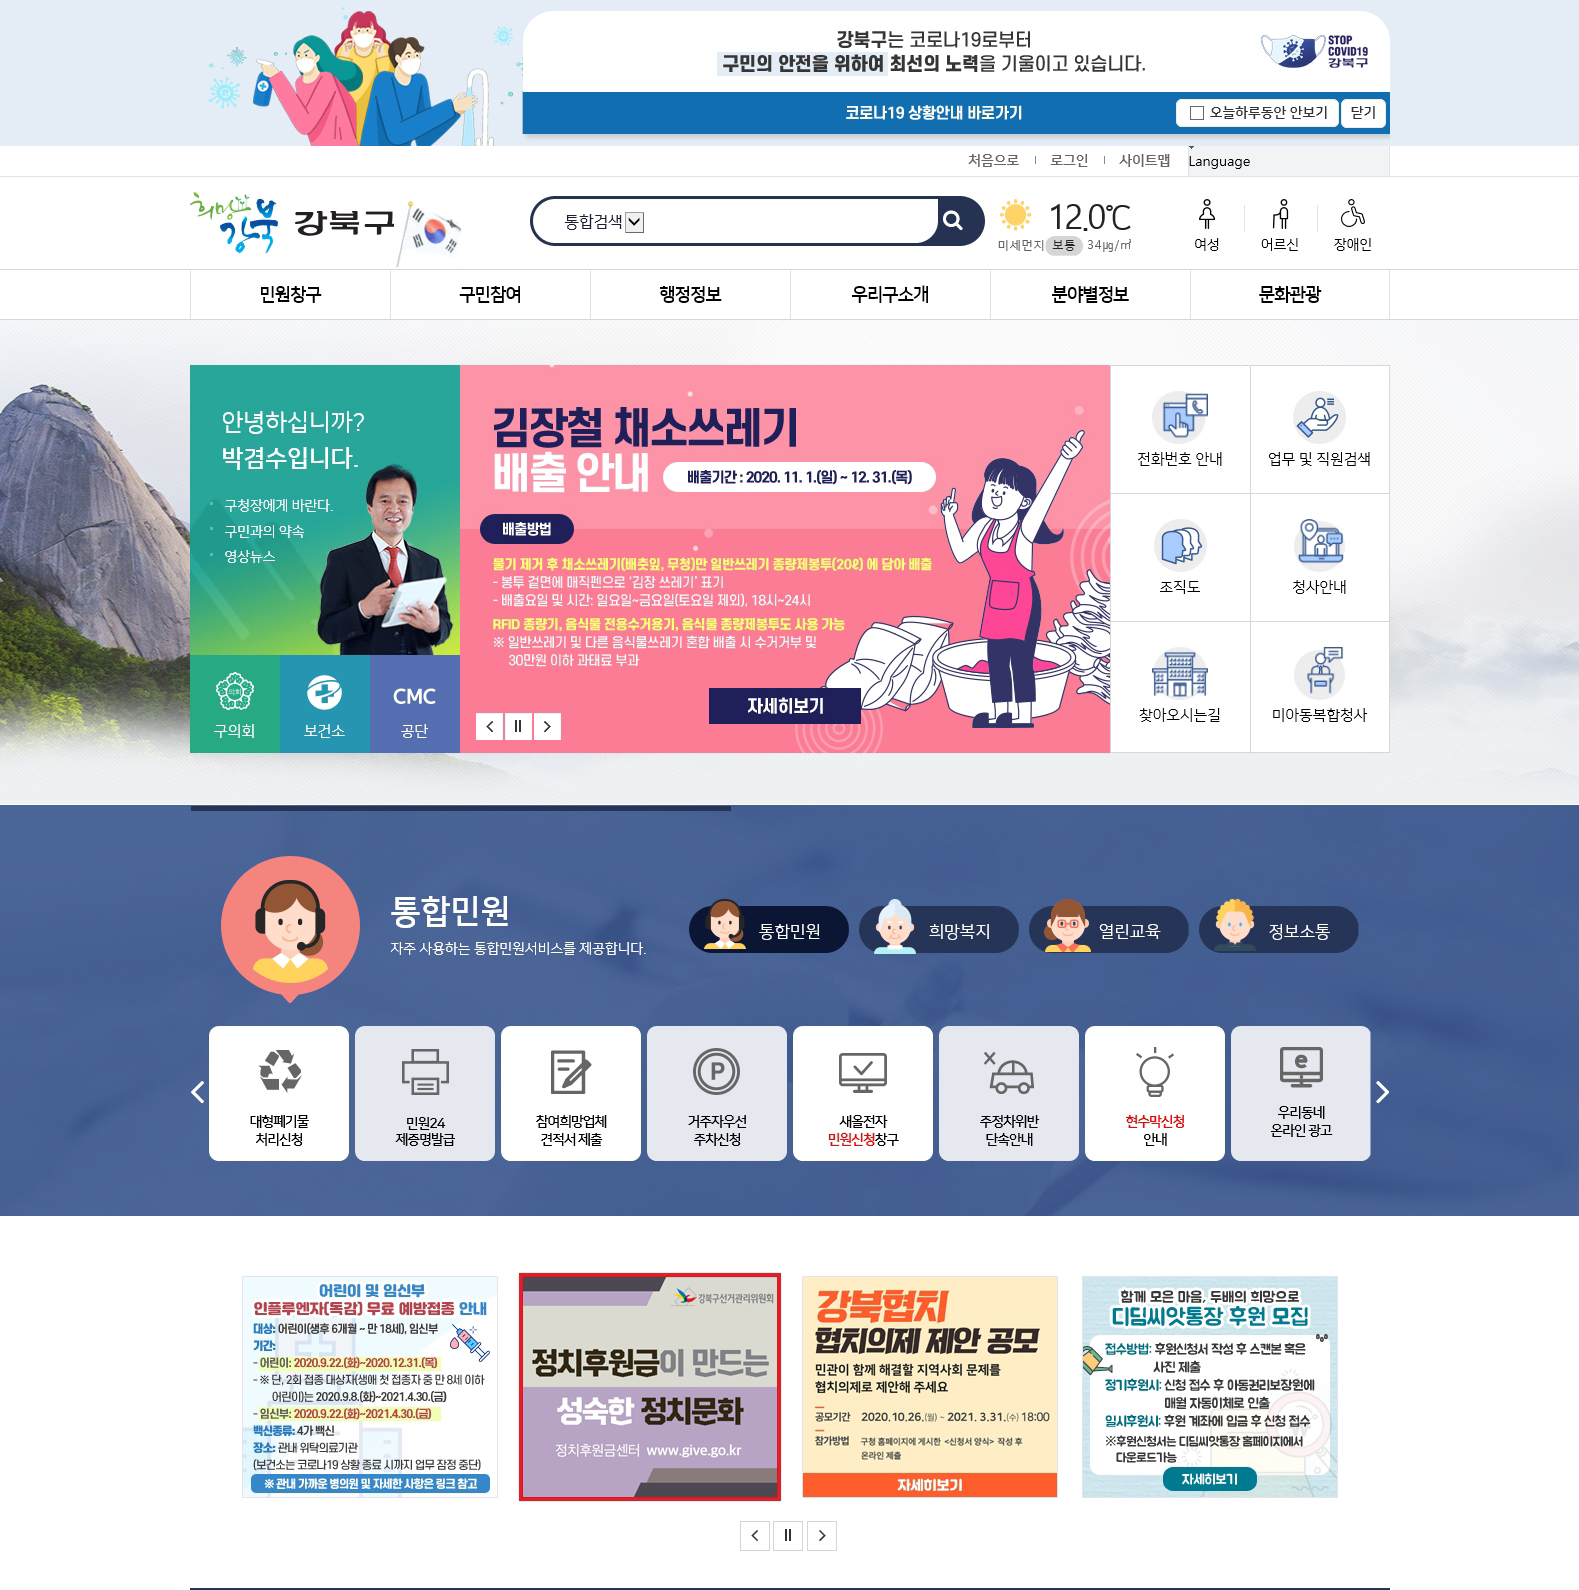 강북구선거관리위원회는 정치자금 후원 활성화 배너를 강북구청 홈페이지에 게시하였습니다.